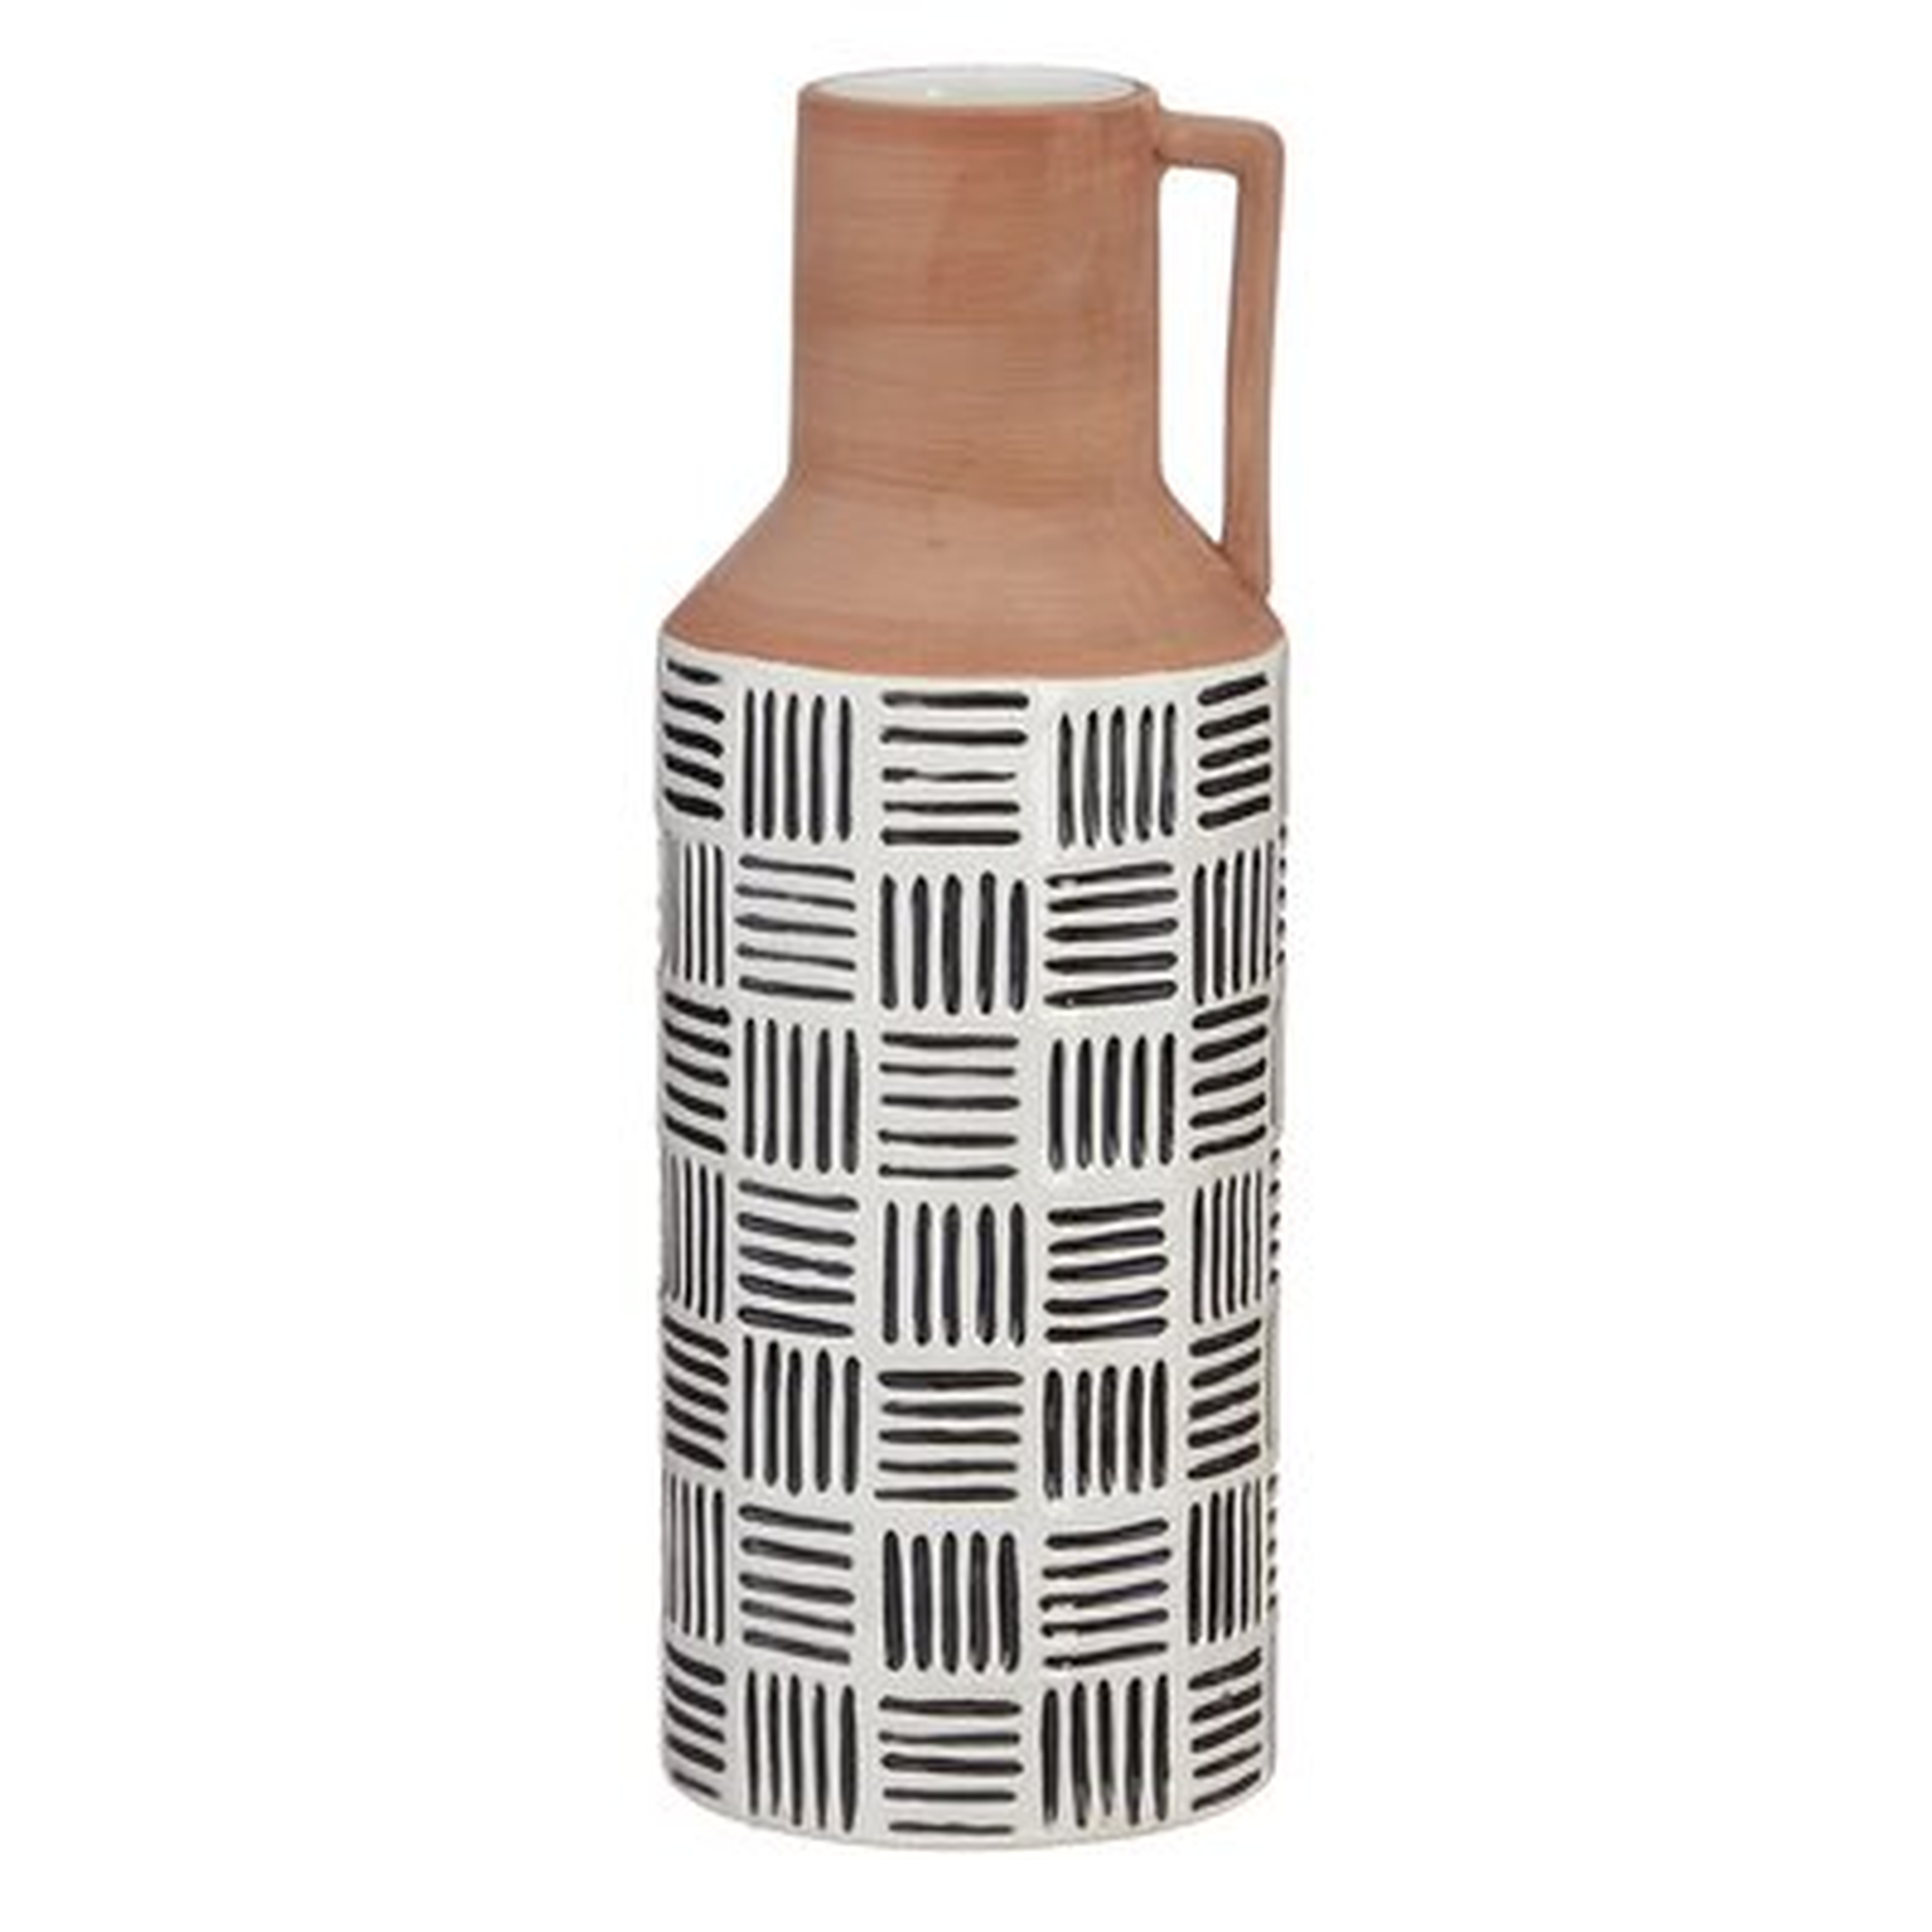 Steinmar Patterned Jug Table Vase - Wayfair